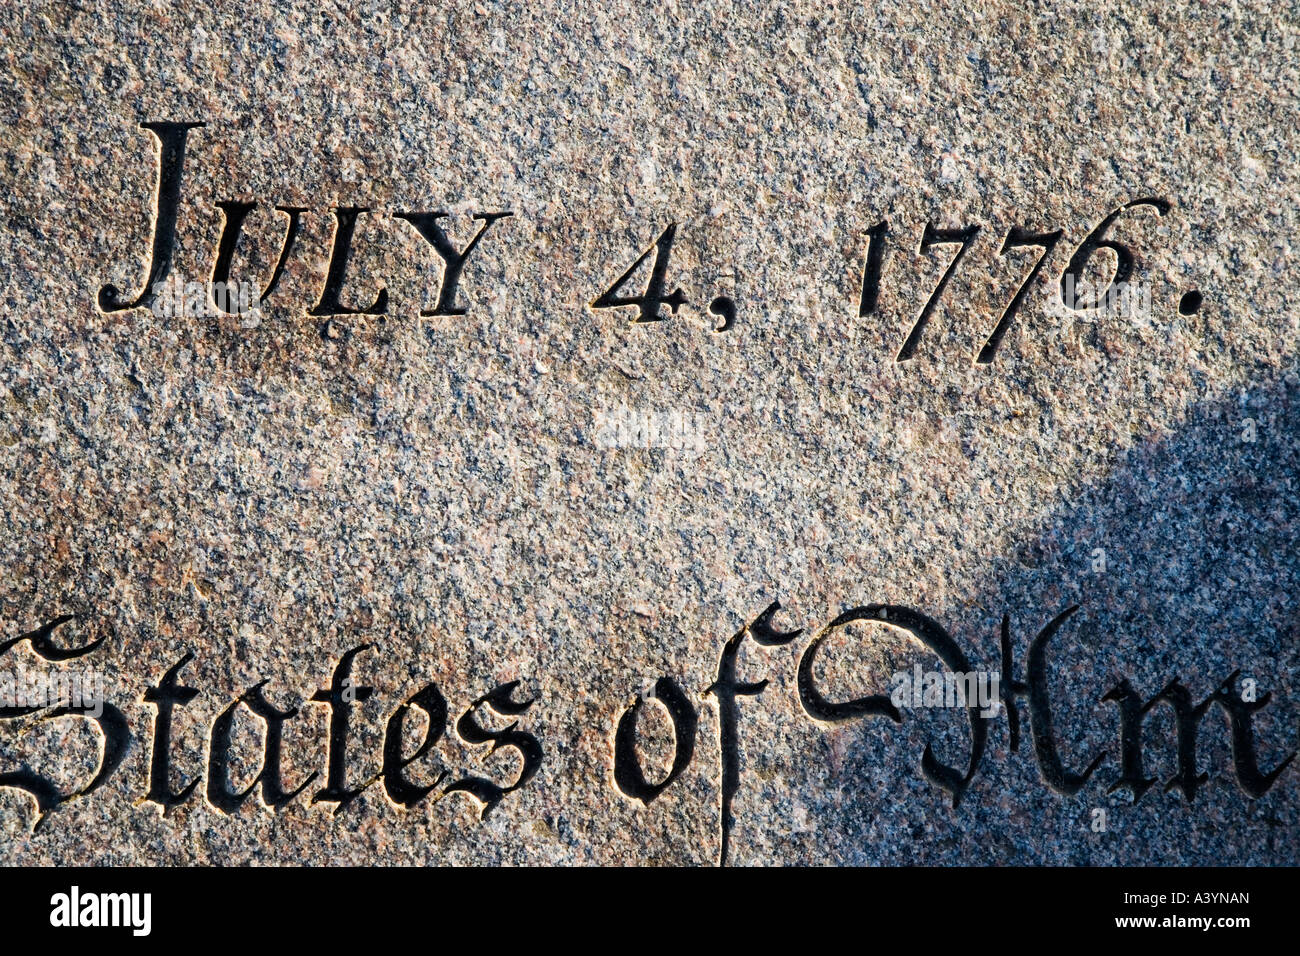 Juli 4 4. 1776 Staaten von Amerika Memorial für die Unterzeichner der Erklärung der Unabhängigkeit National Mall, Washington DC. Detail. Stockfoto